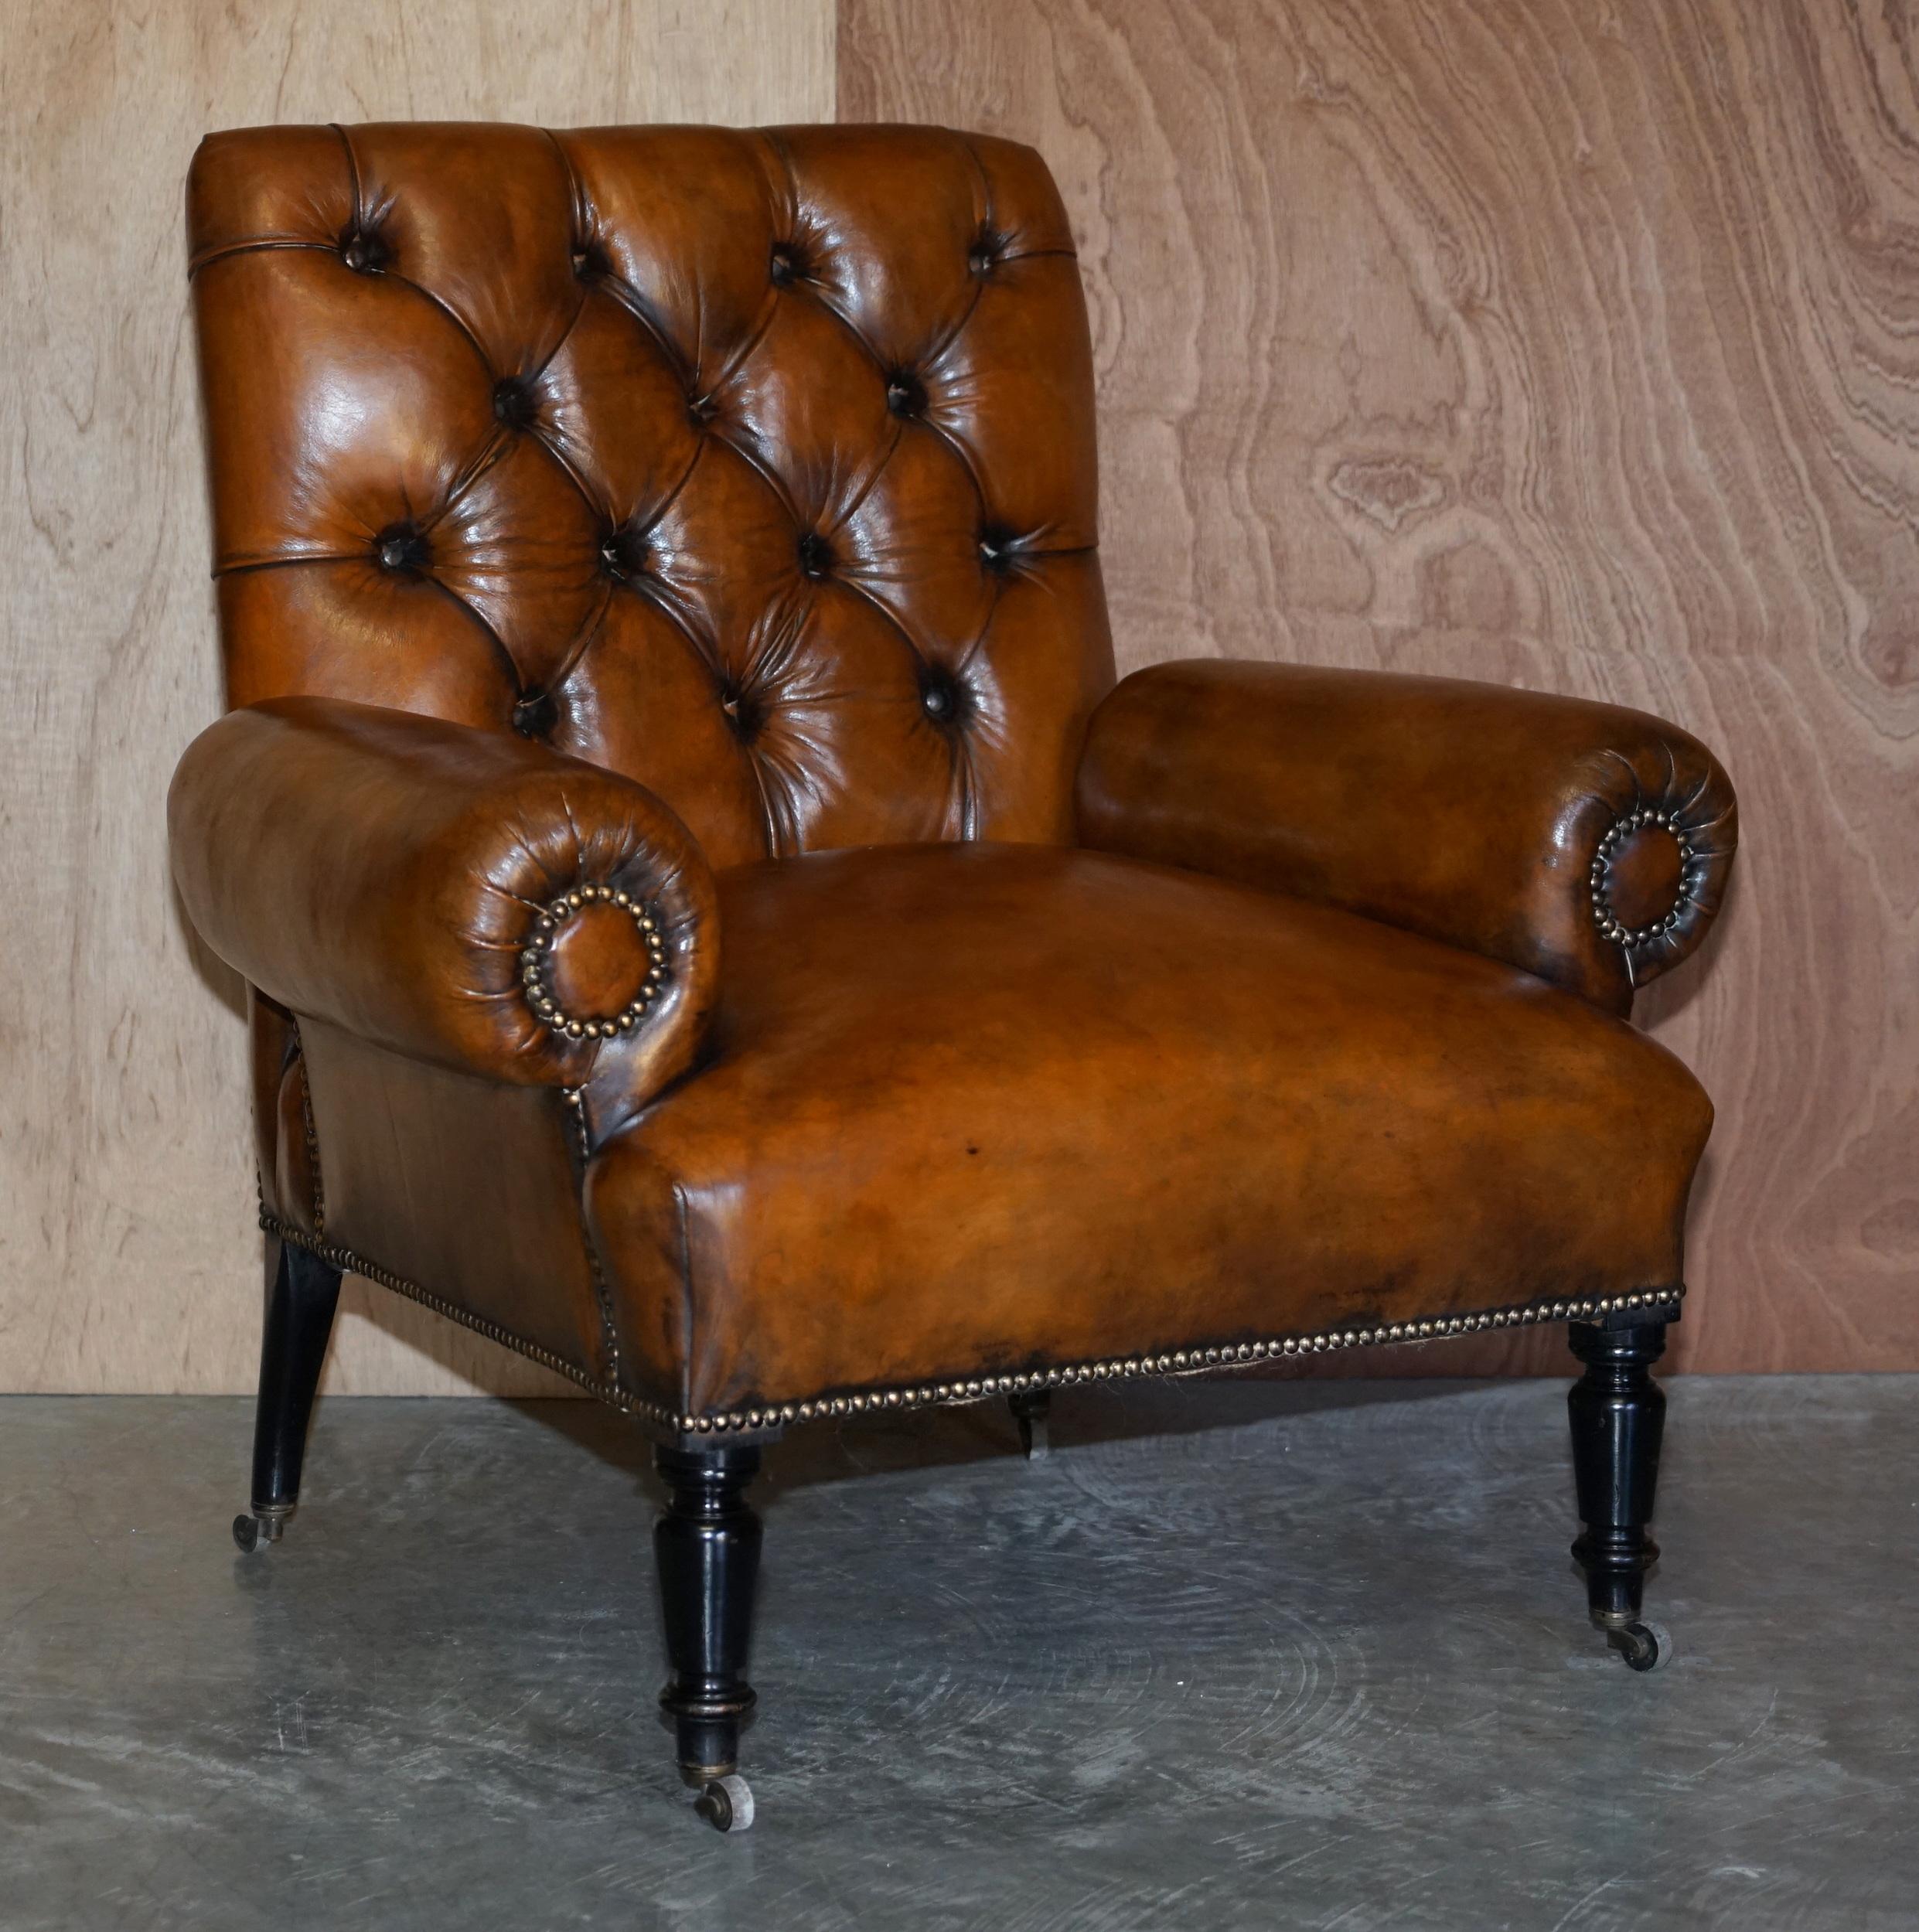 Nous sommes ravis de vous proposer cette paire de fauteuils Chesterfield en cuir brun teint à la main, datant d'environ 1810-1820, entièrement restaurés, avec des accoudoirs à traversin

Les chaises ont été entièrement restaurées, y compris le